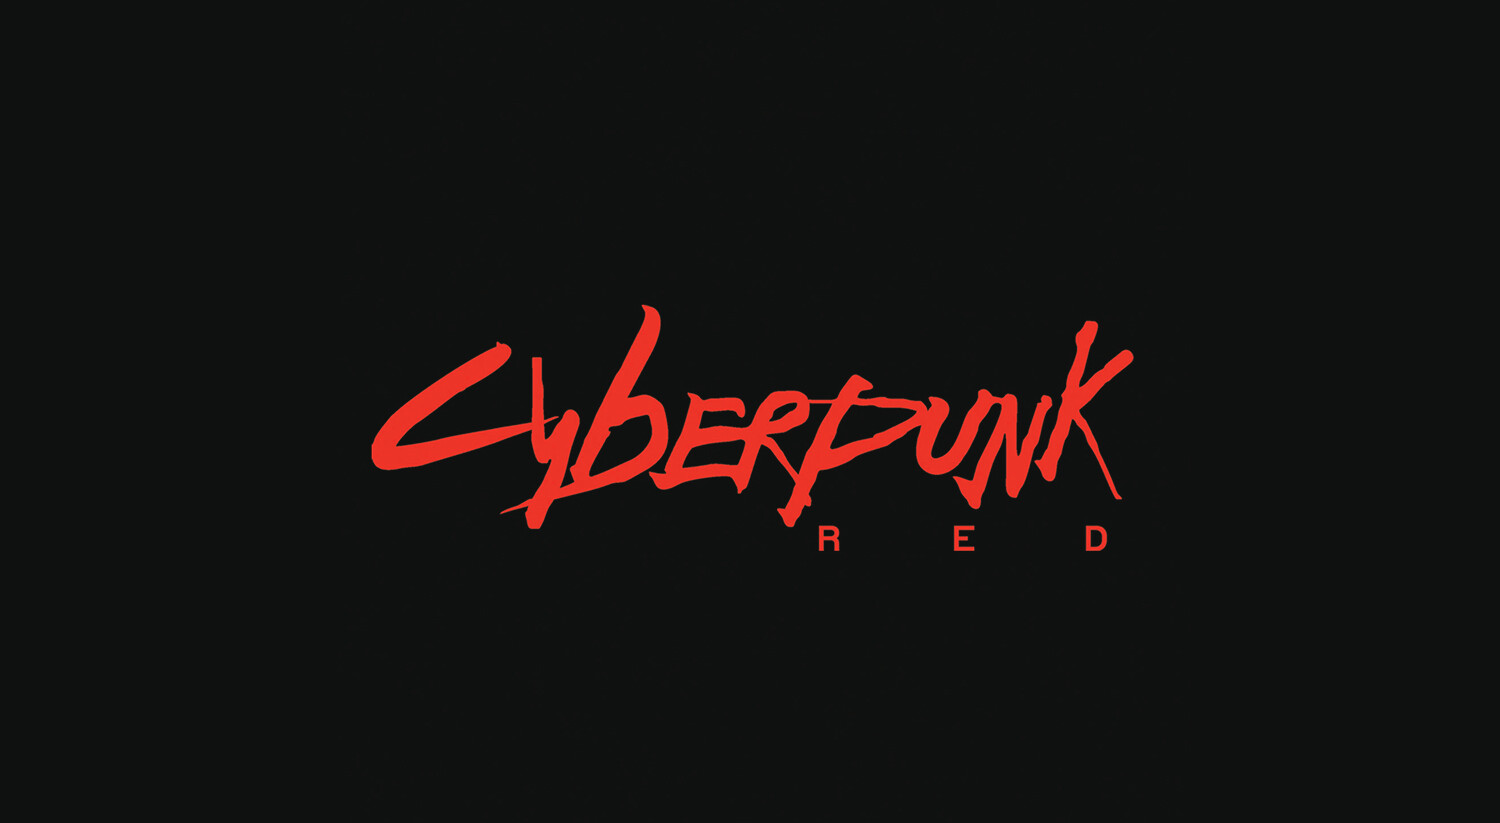 Cyberpunk logo ae фото 32